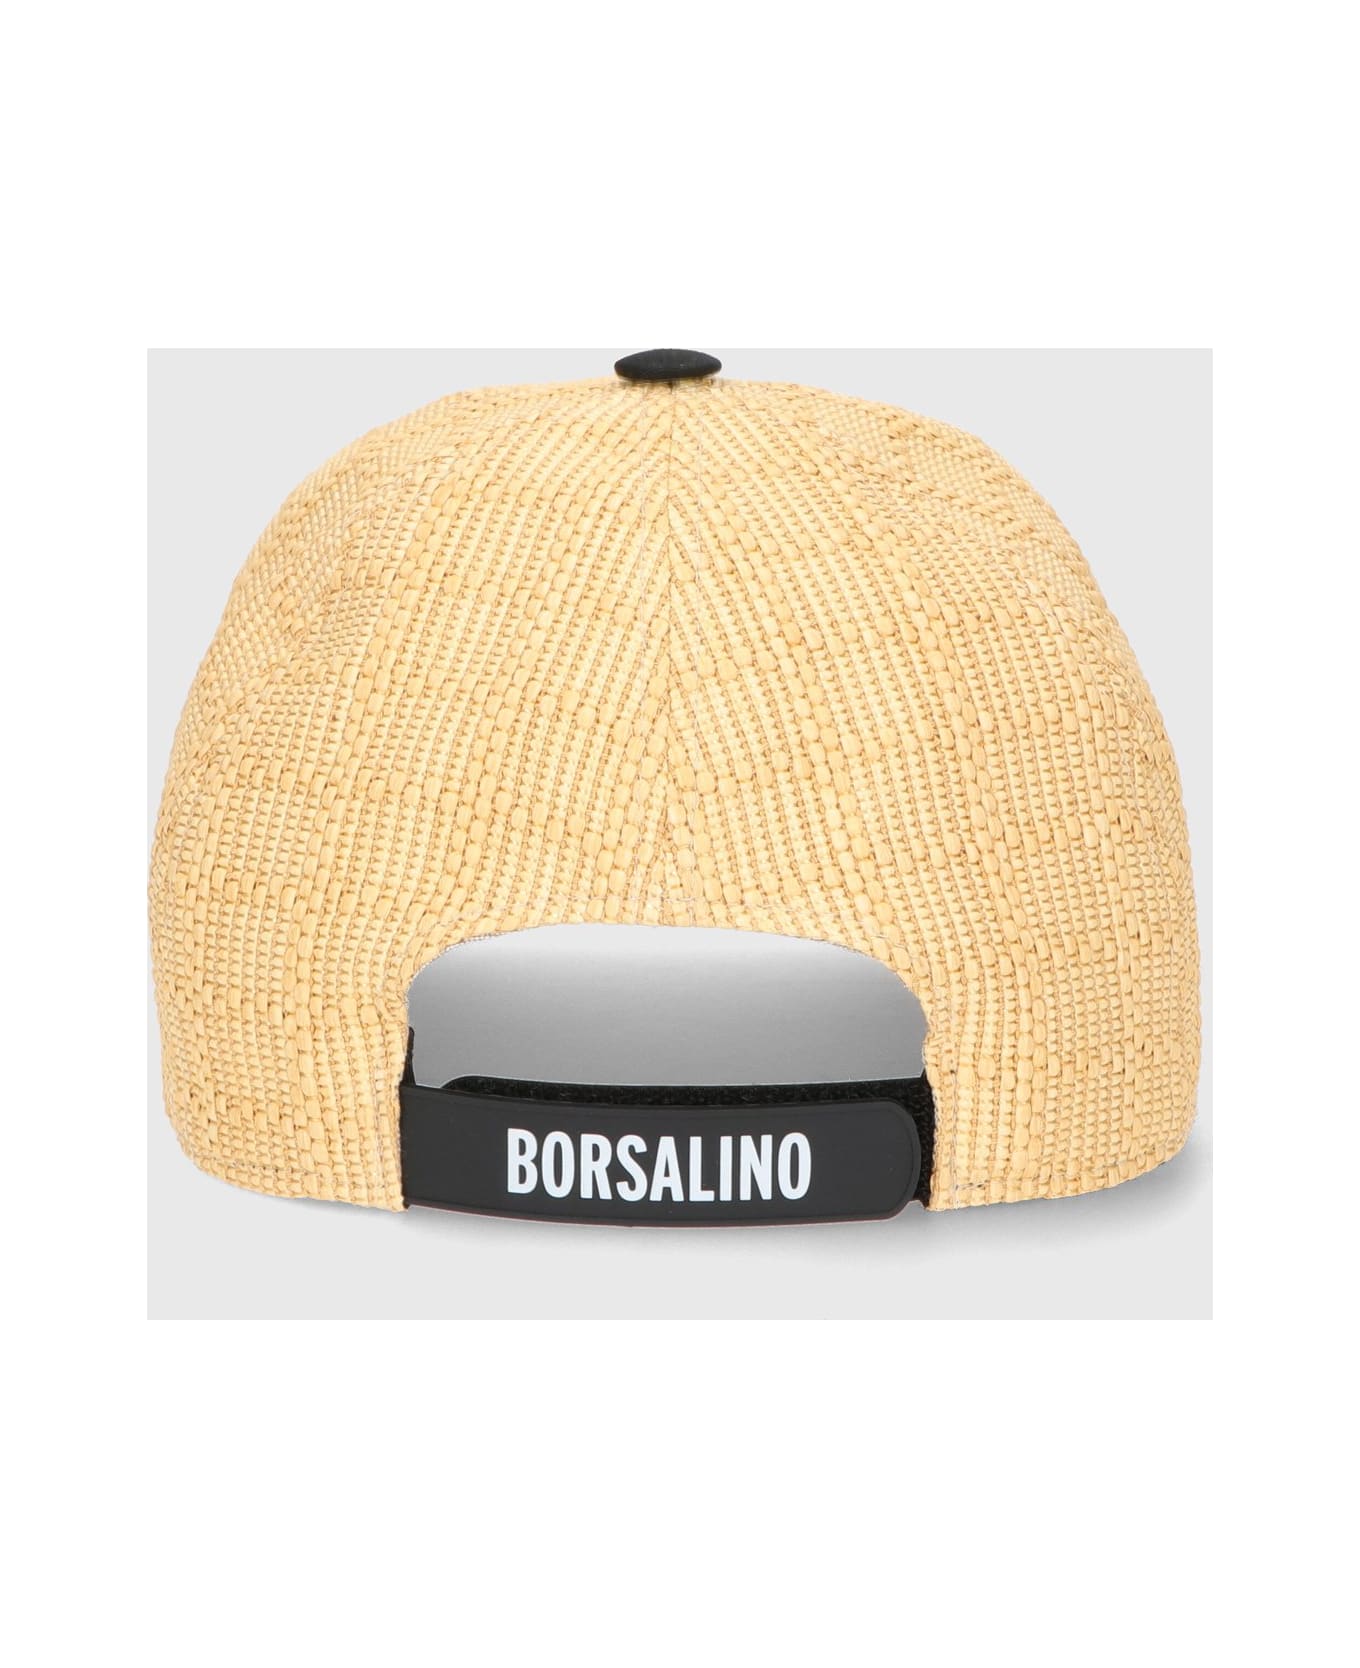 Borsalino Skater Baseball Cap - BEIGE